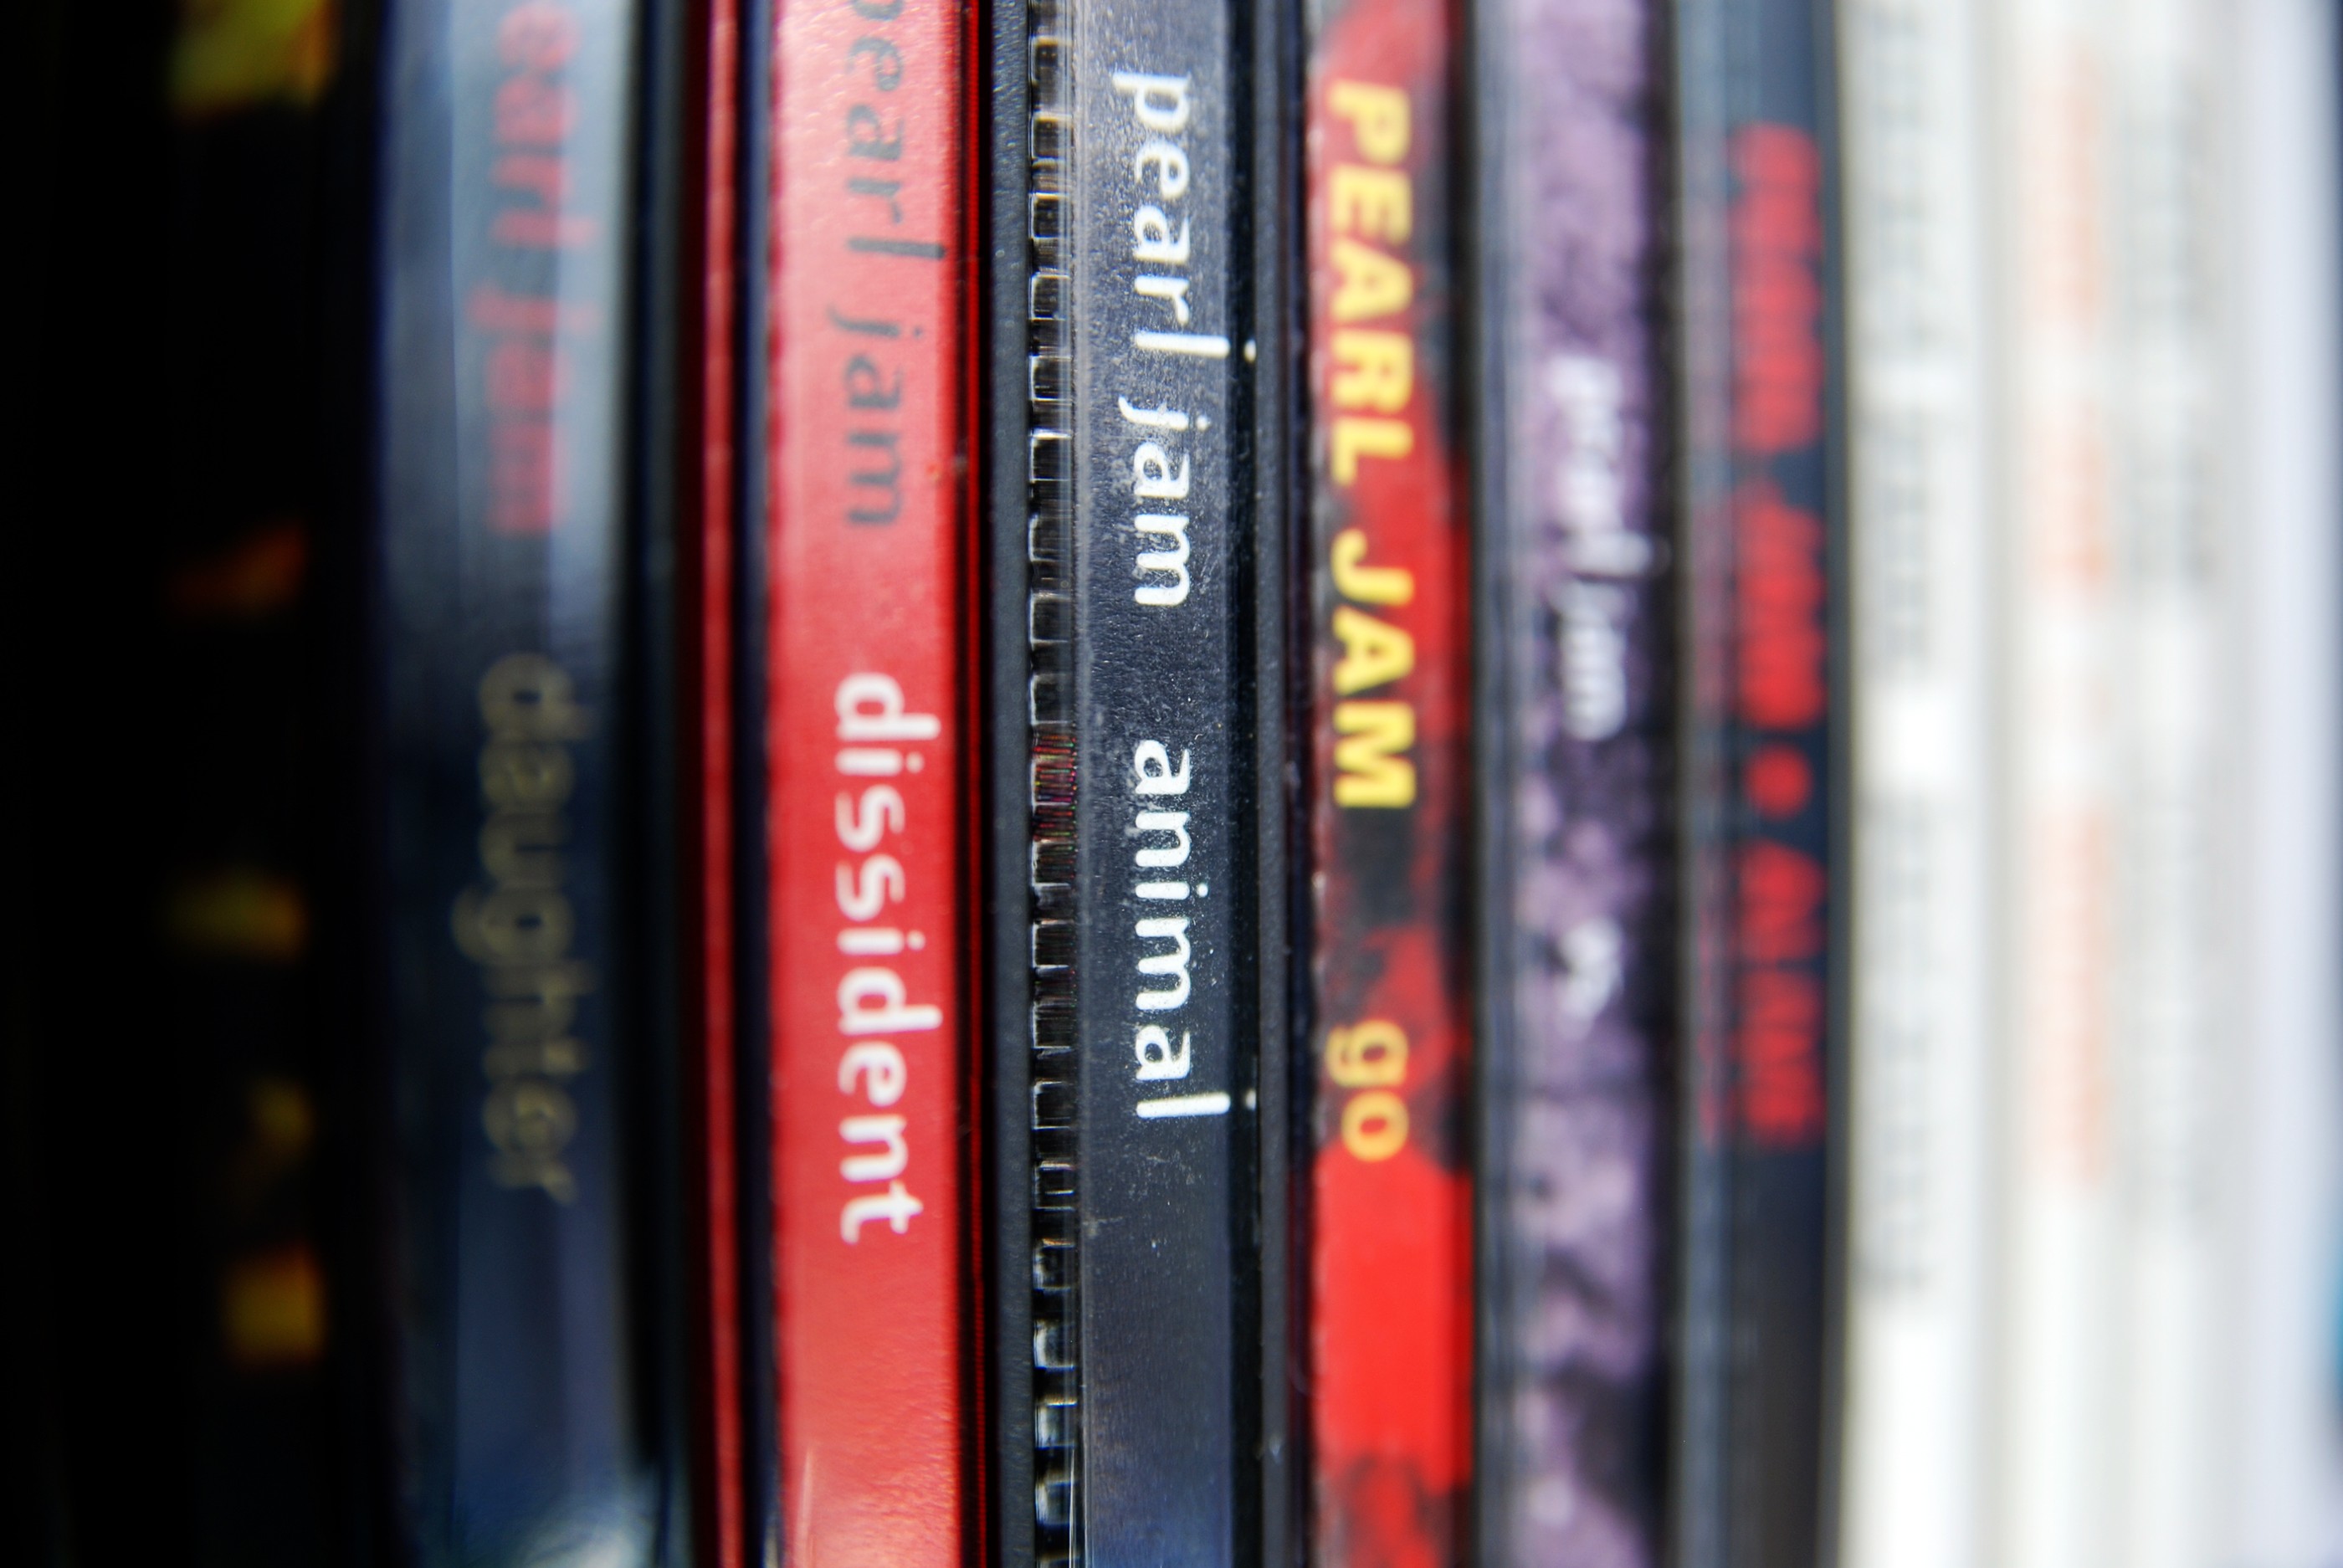 Pearl Jam anuncia novo álbum e datas de turnê americana (Foto: Getty Images)